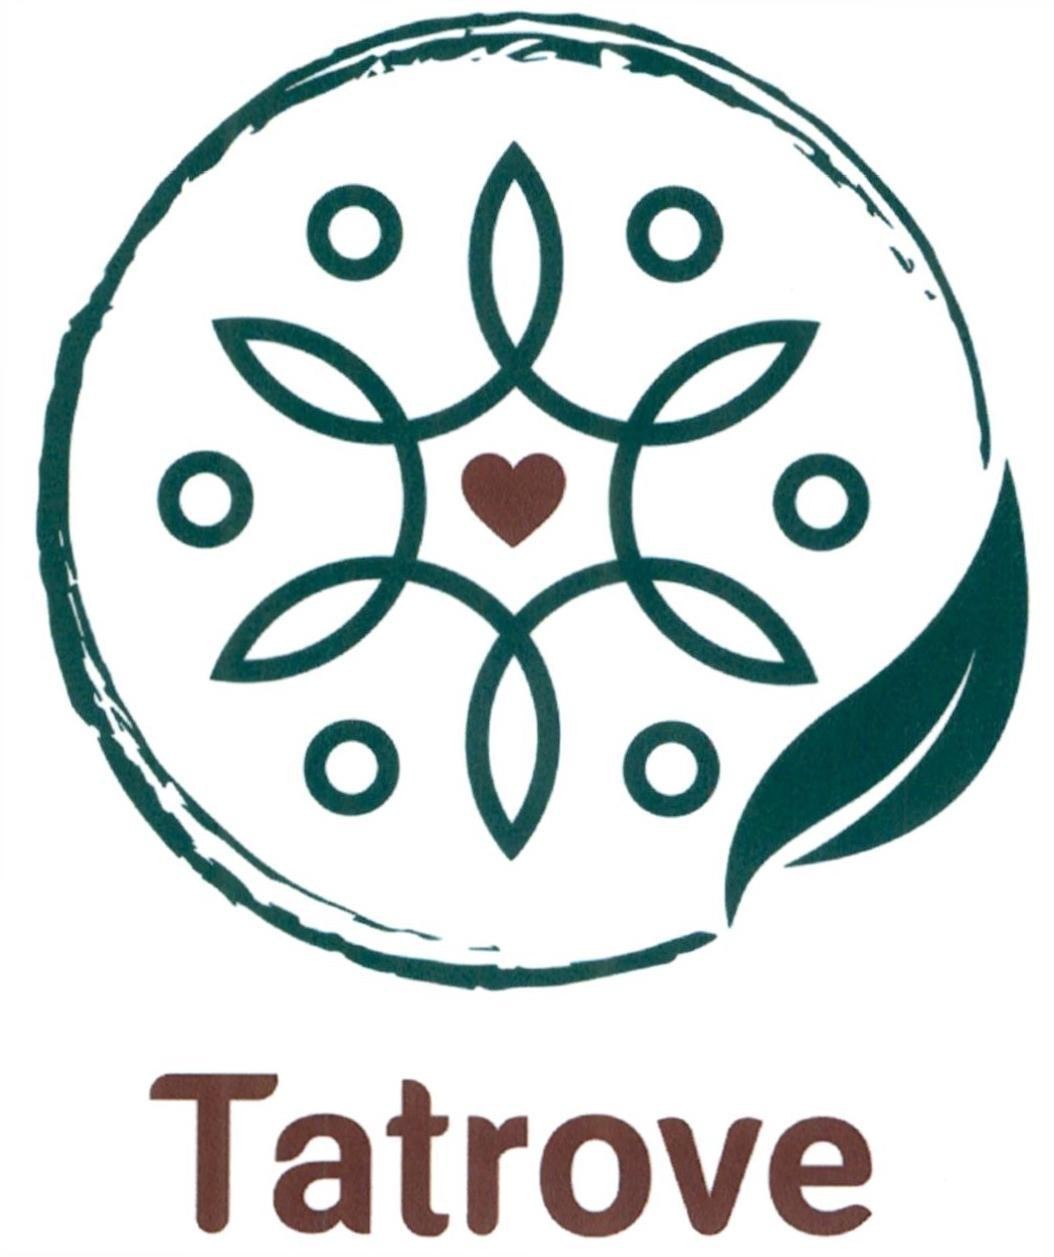 Tatrove